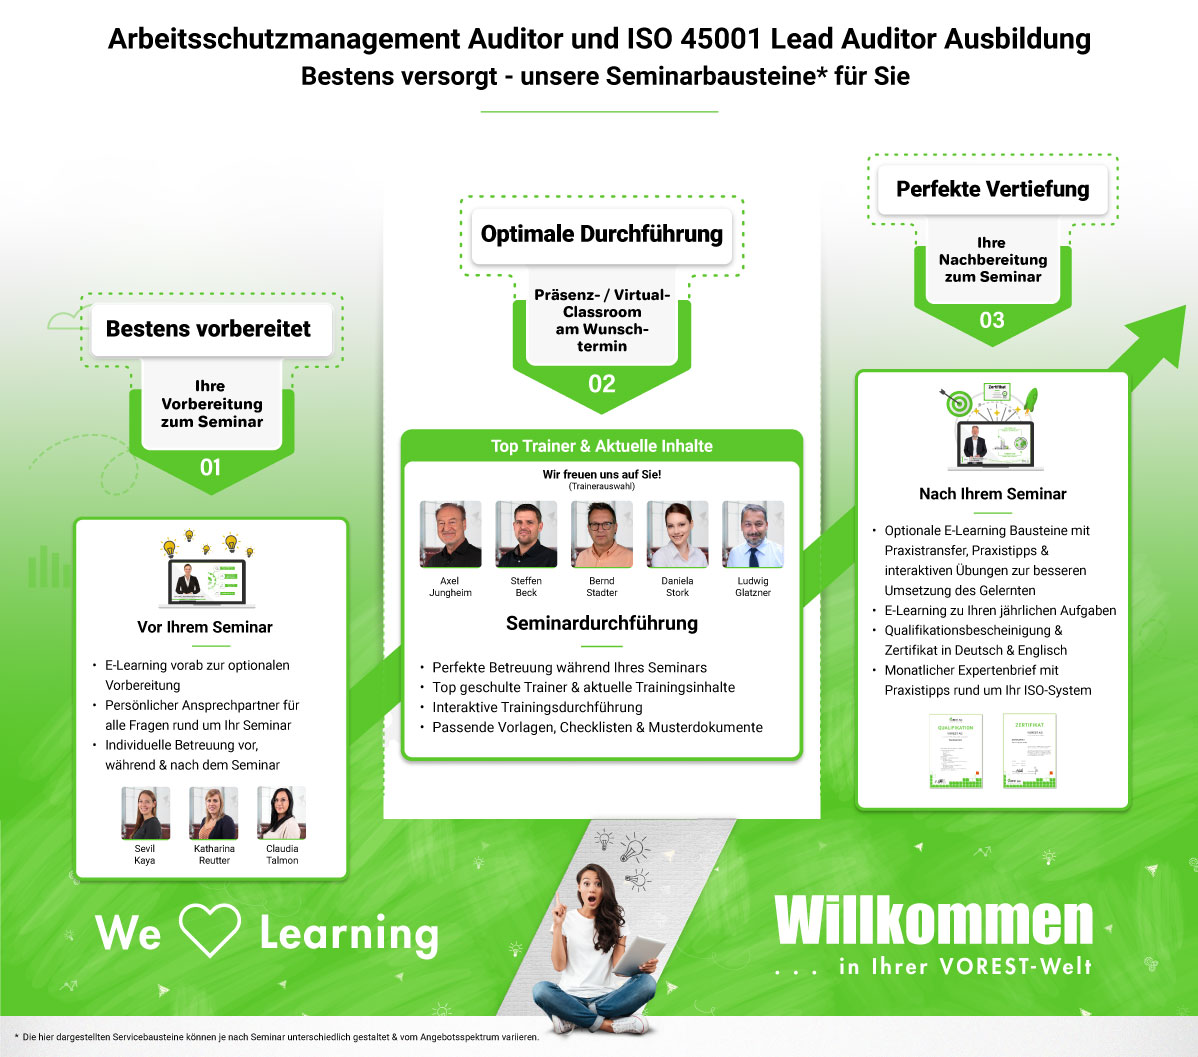 Arbeitsschutzmanagement Auditor und ISO 45001 Lead Auditor Ausbildung